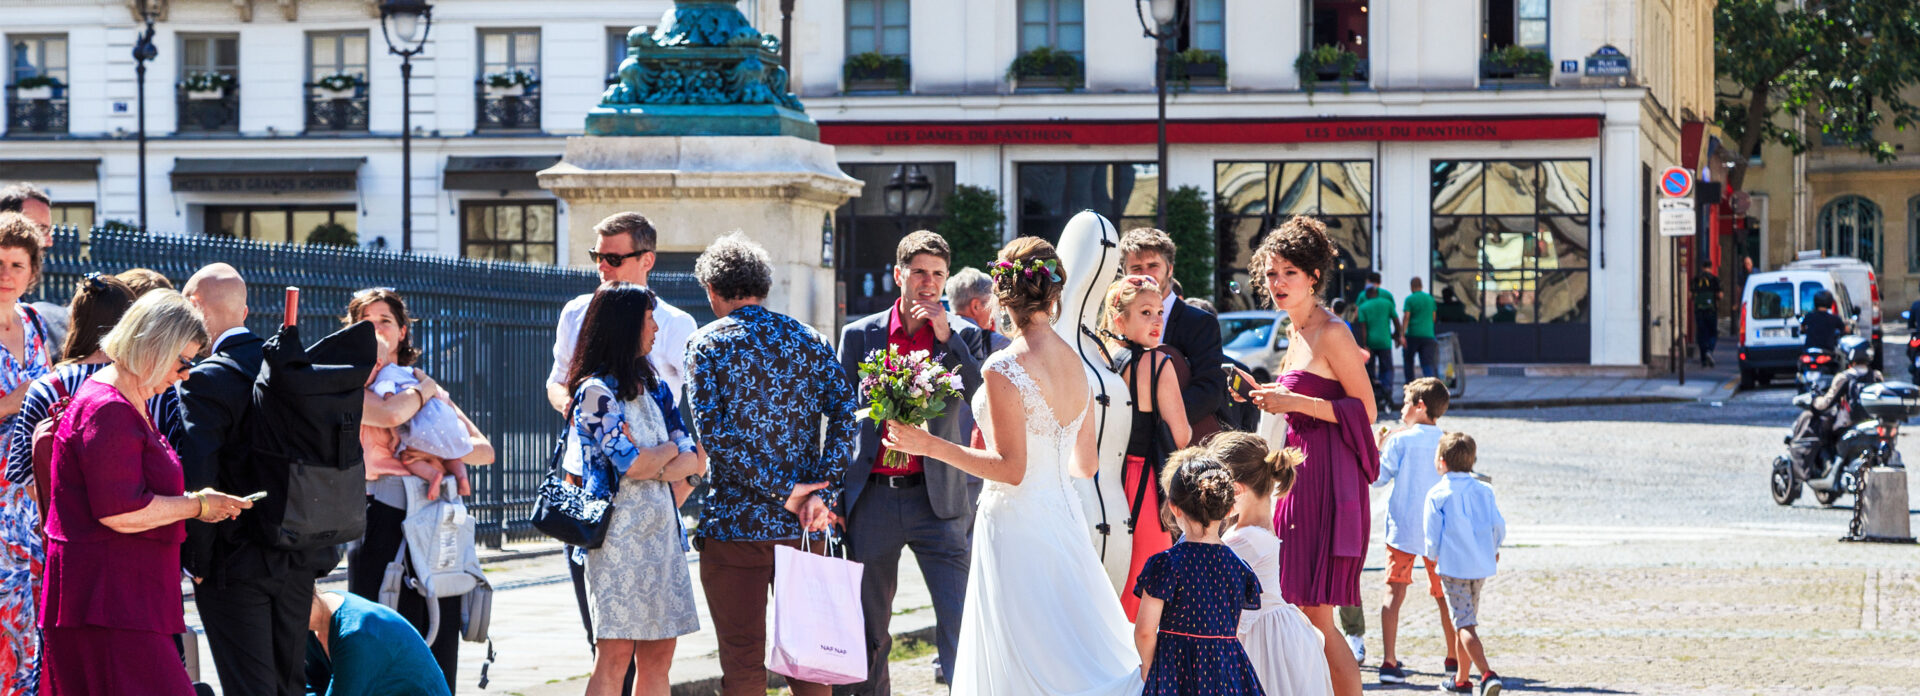 bryllup i Paris Frankrike fine steder tips anbefalt